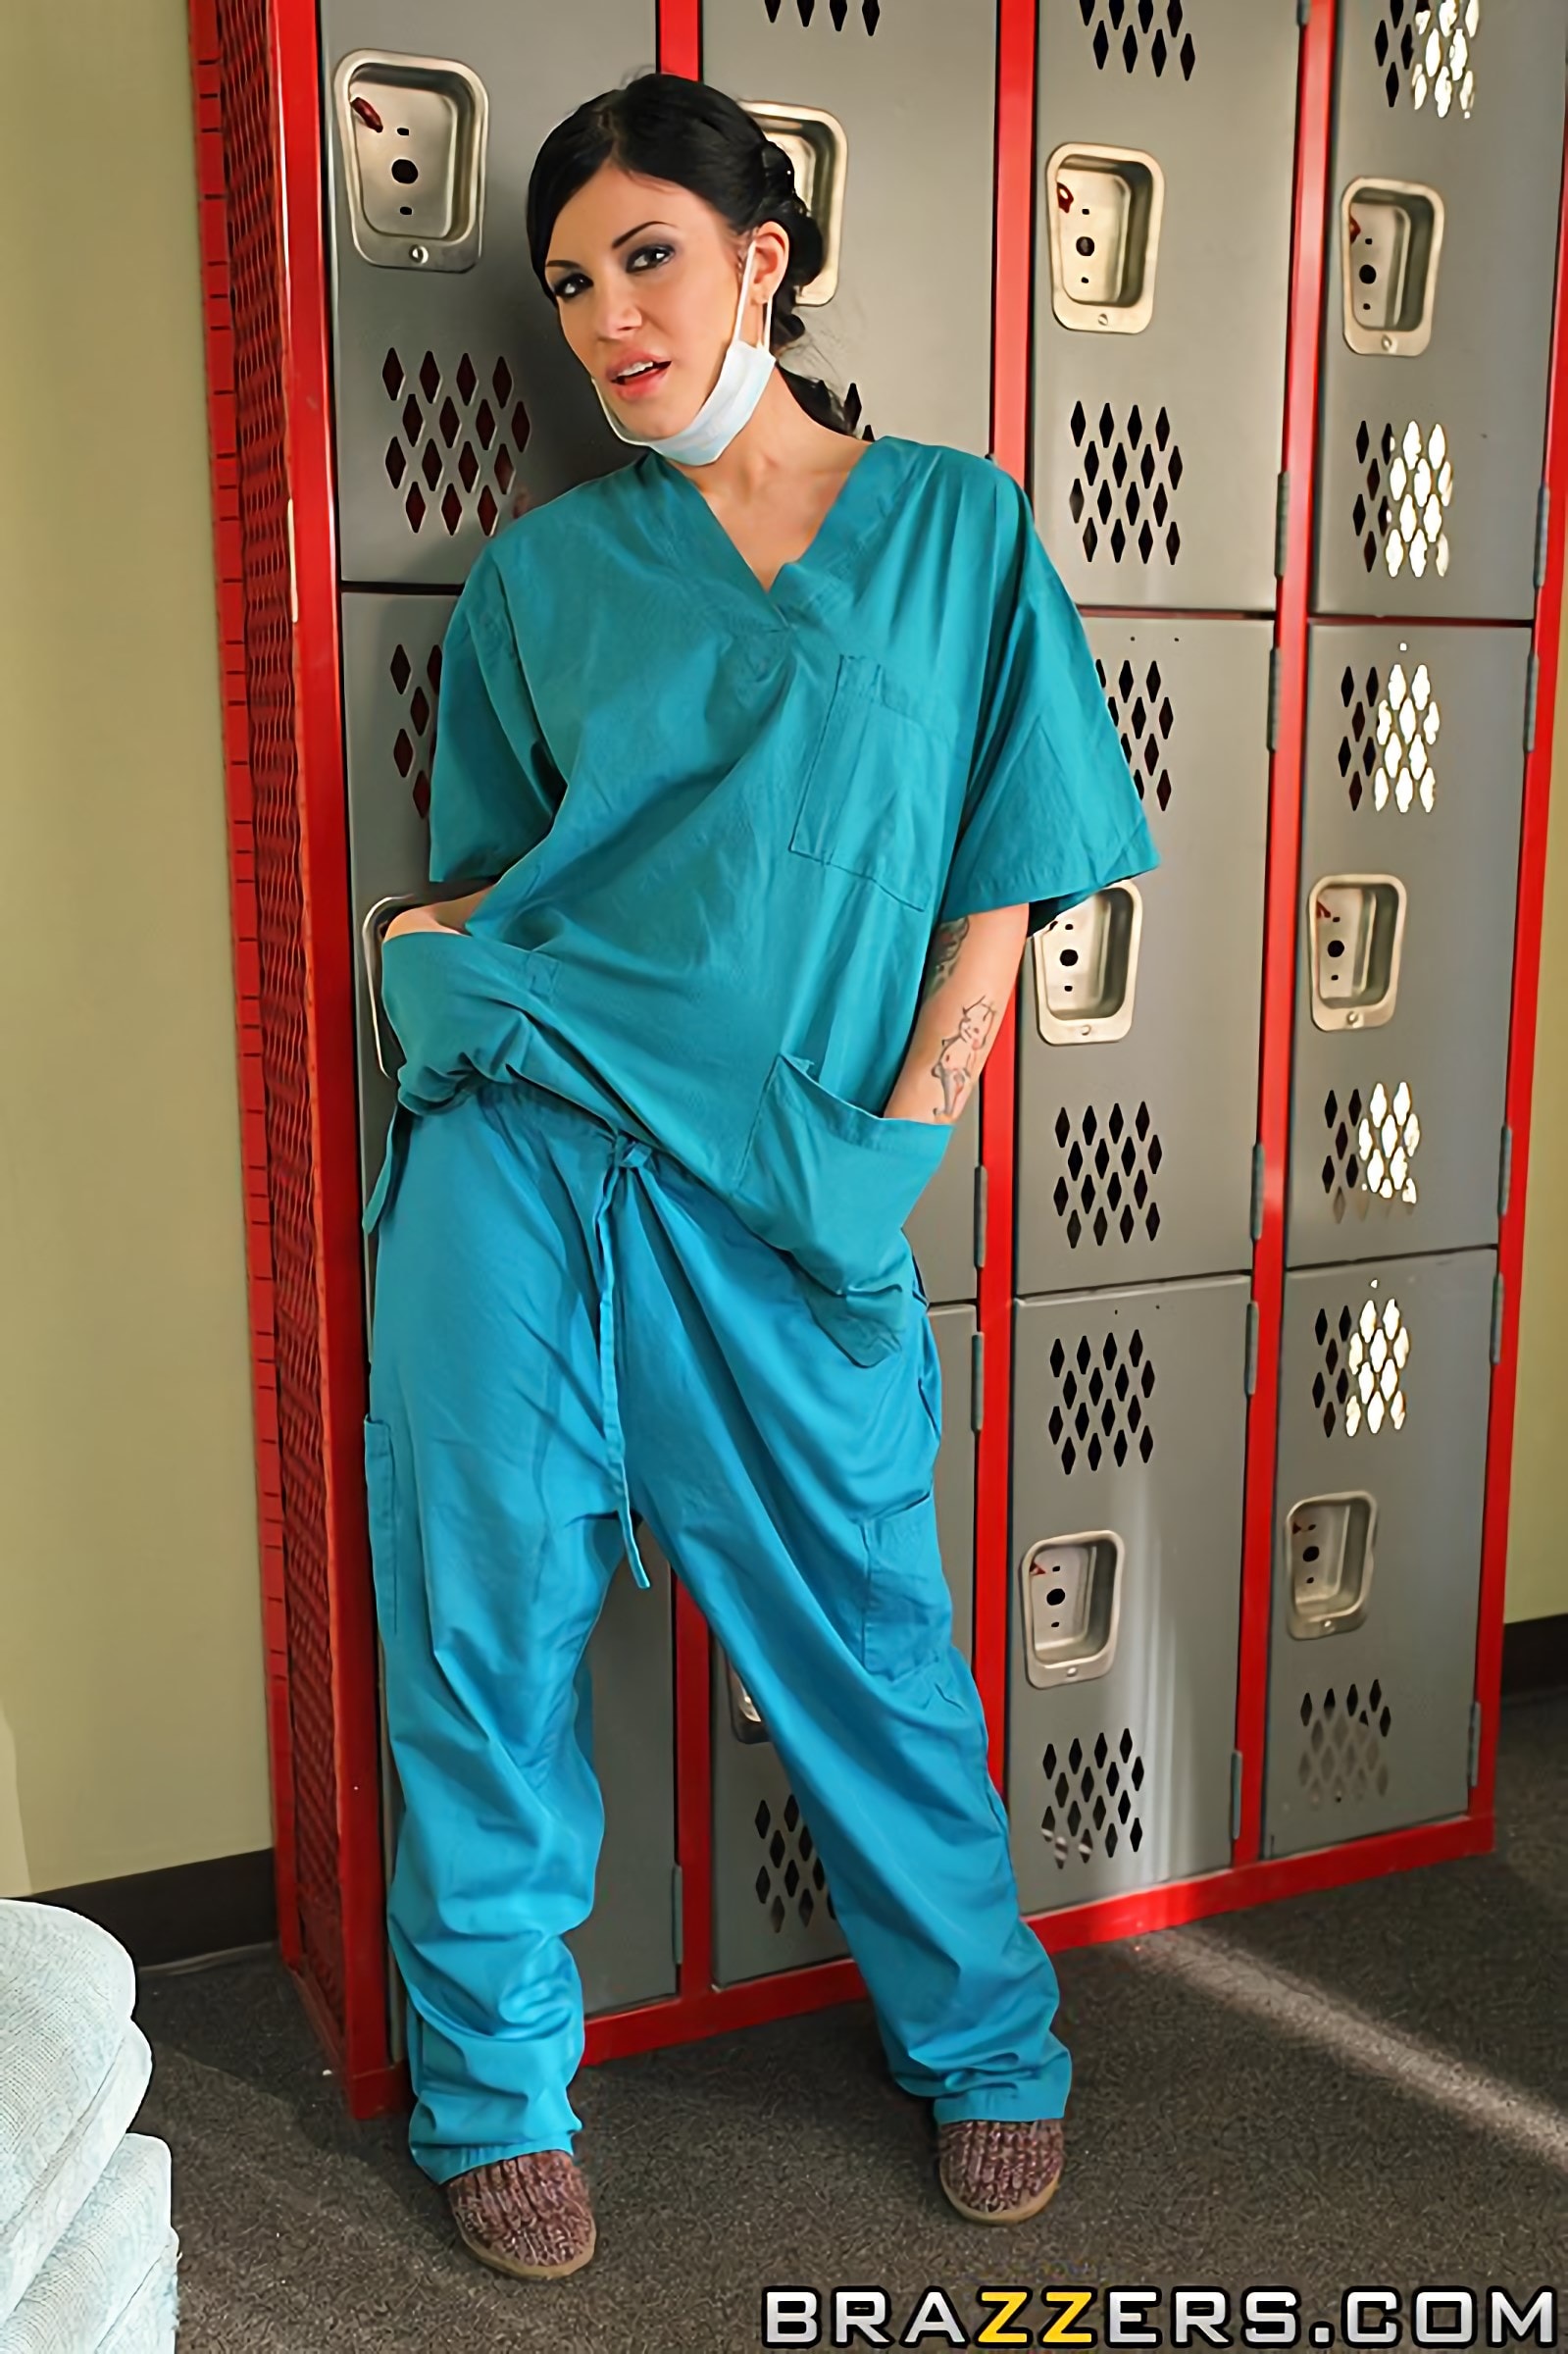 Brazzers 'Сексуальный врач использует мужчину медсестра' Ролях Andy San Dimas (Фото 1)